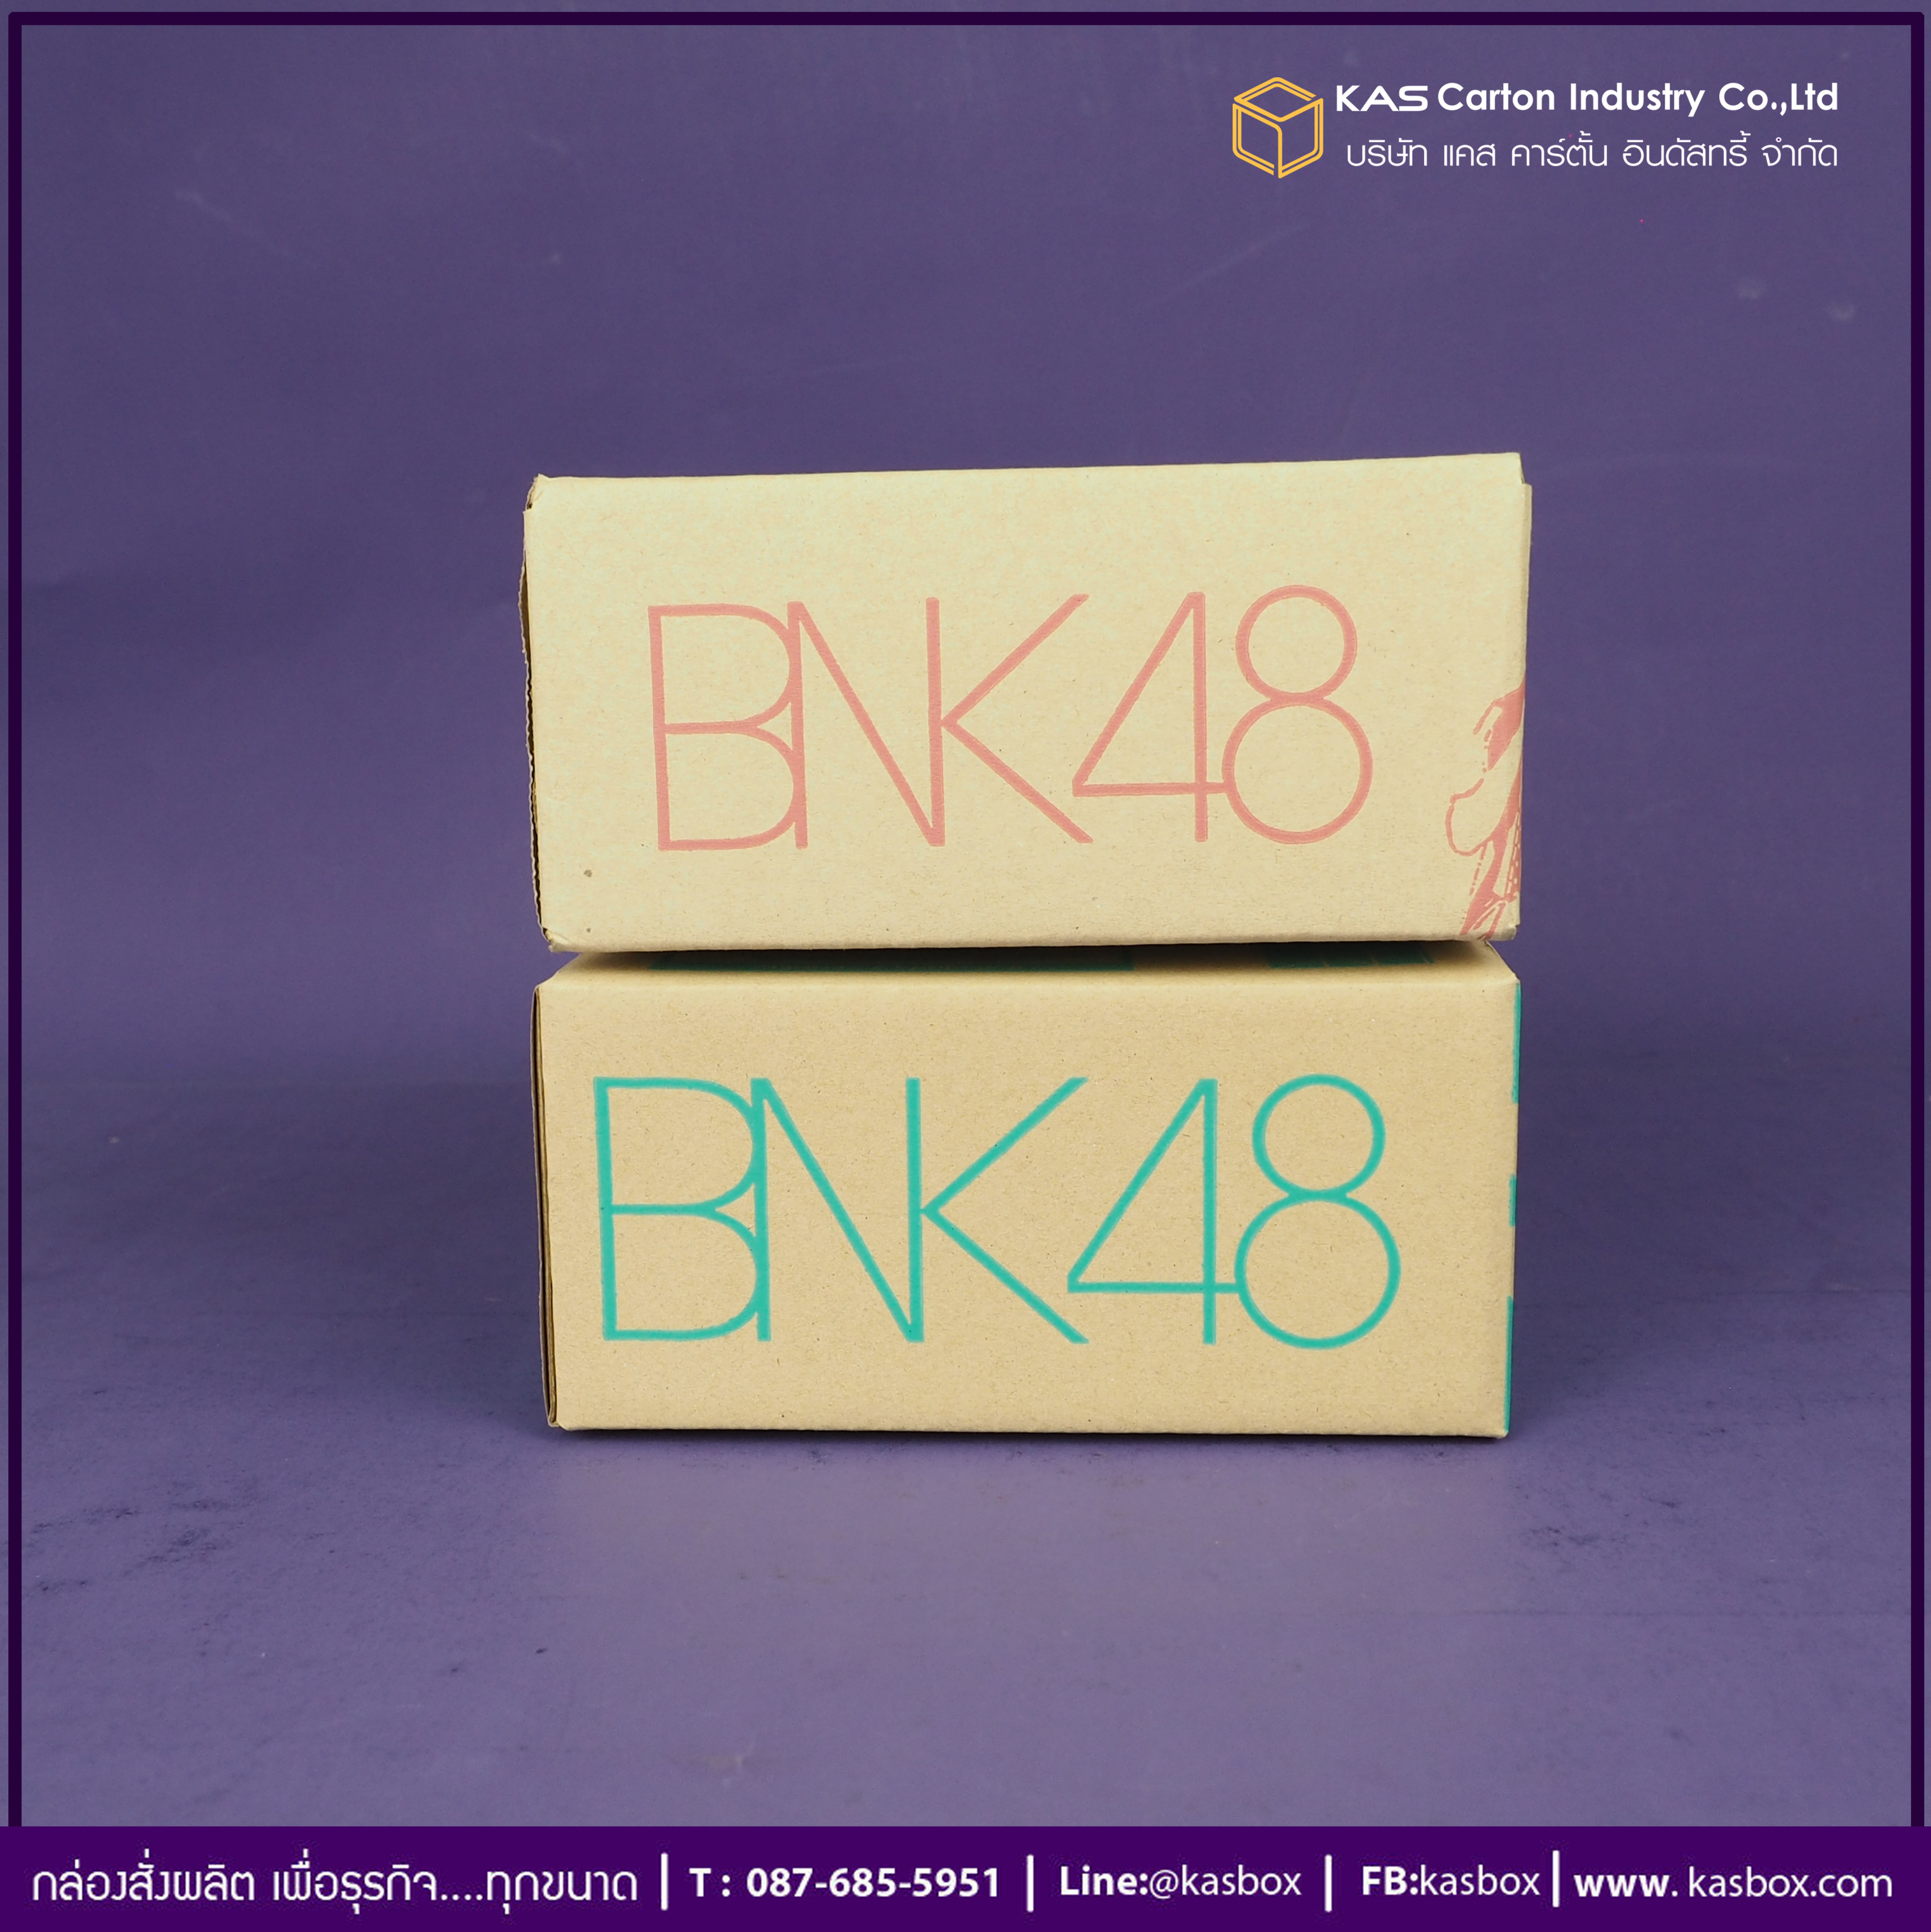 กล่องลูกฟูก สำเร็จรูป และ สั่งผลิต ตามความต้องการลูกค้า กล่องกระดาษลูกฟูก กล่องใส่ซีดี BNK48